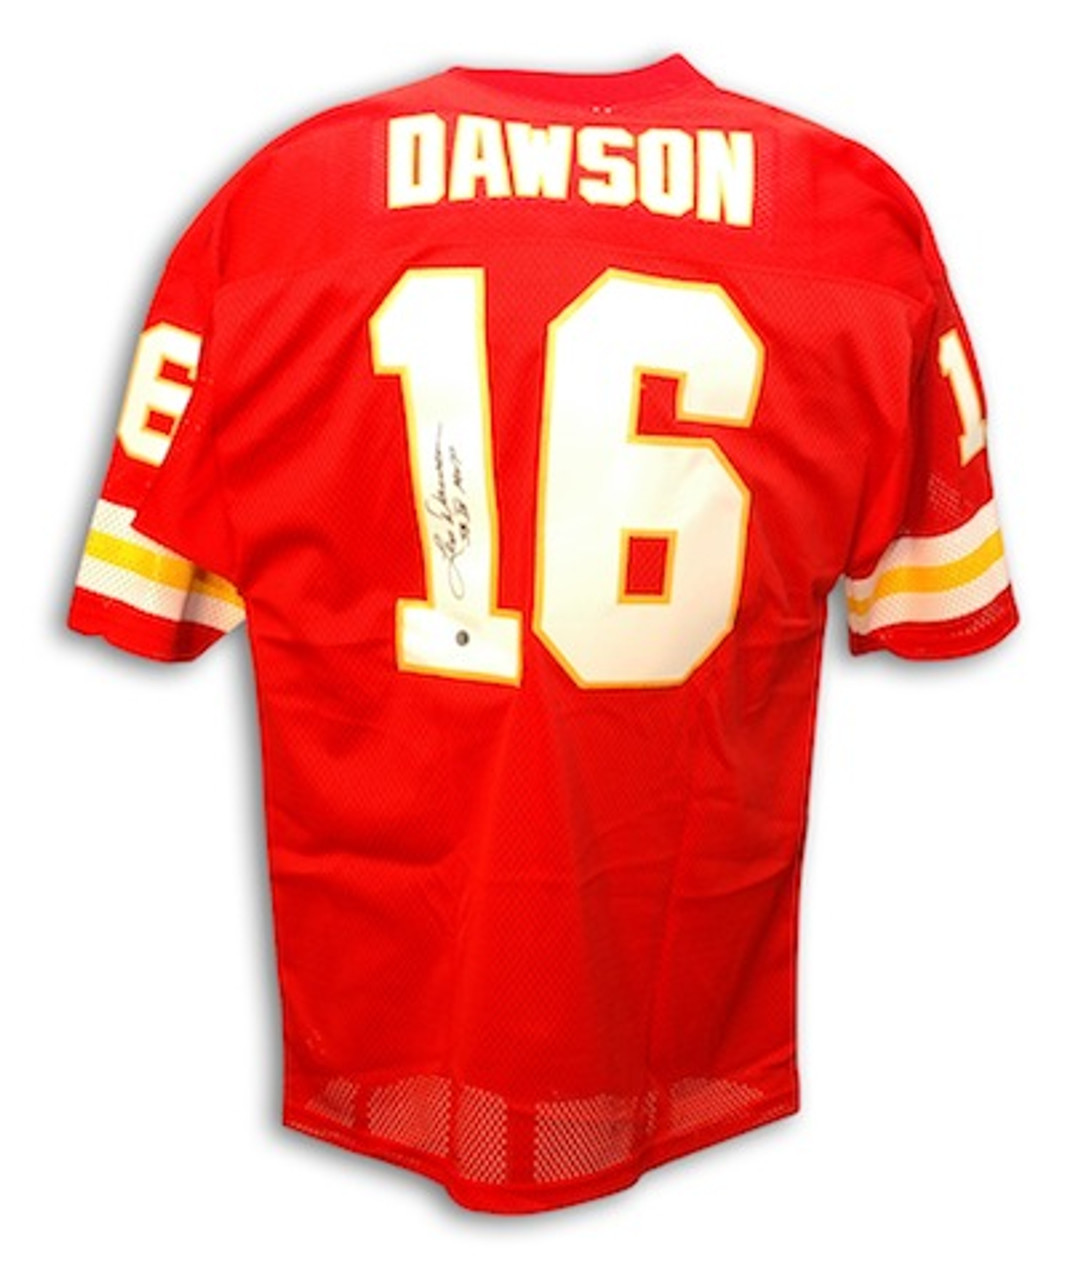 len dawson autographed jersey